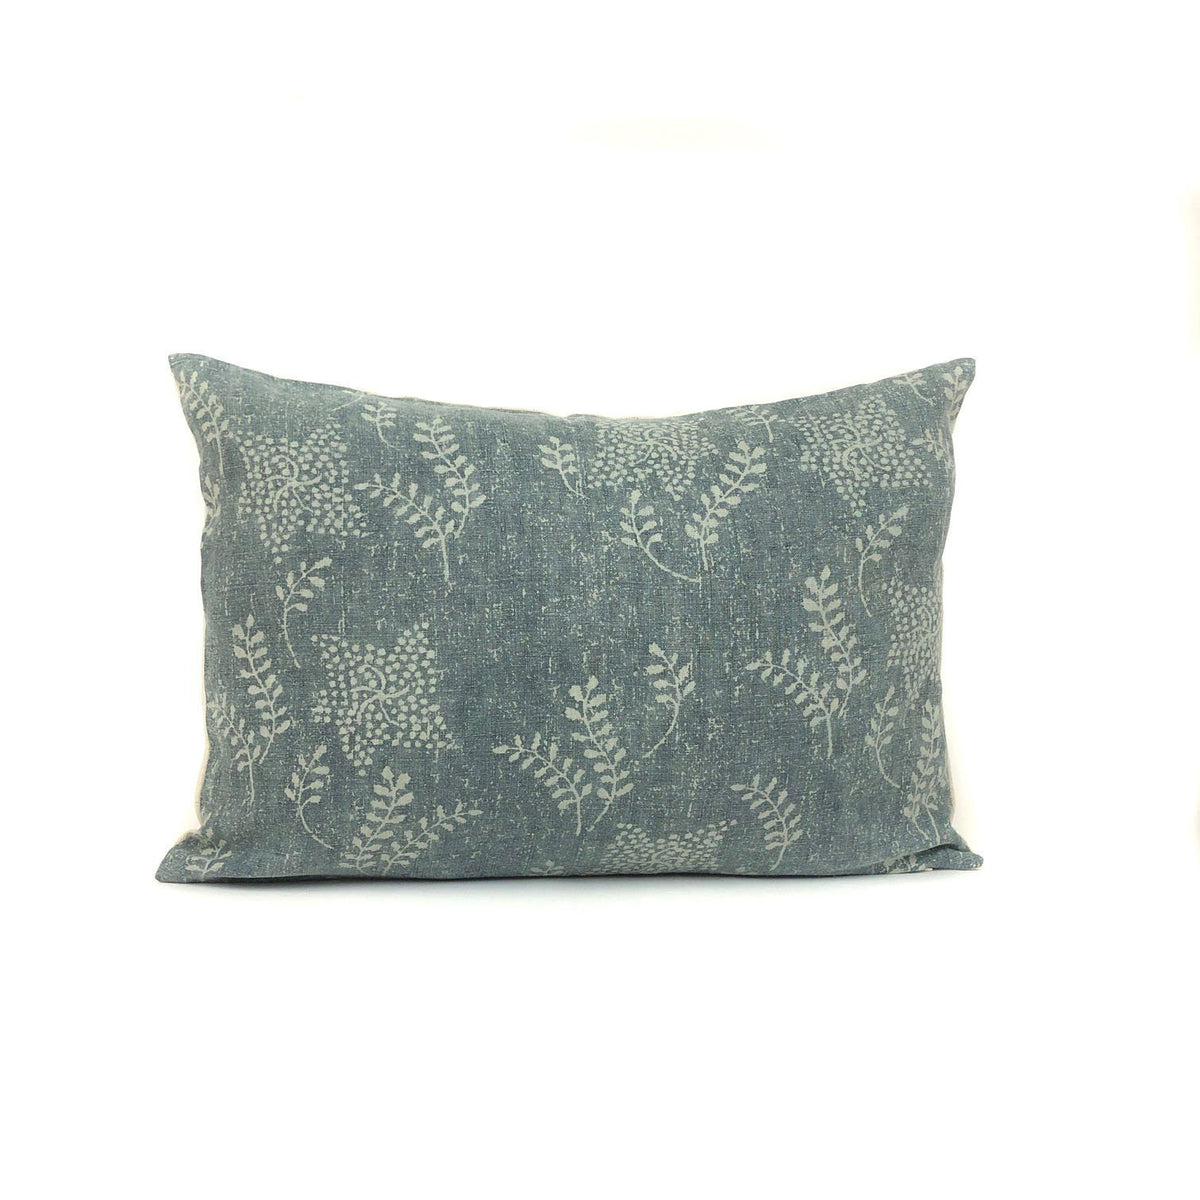 Vintage Green Floral Designer Pillow Cover